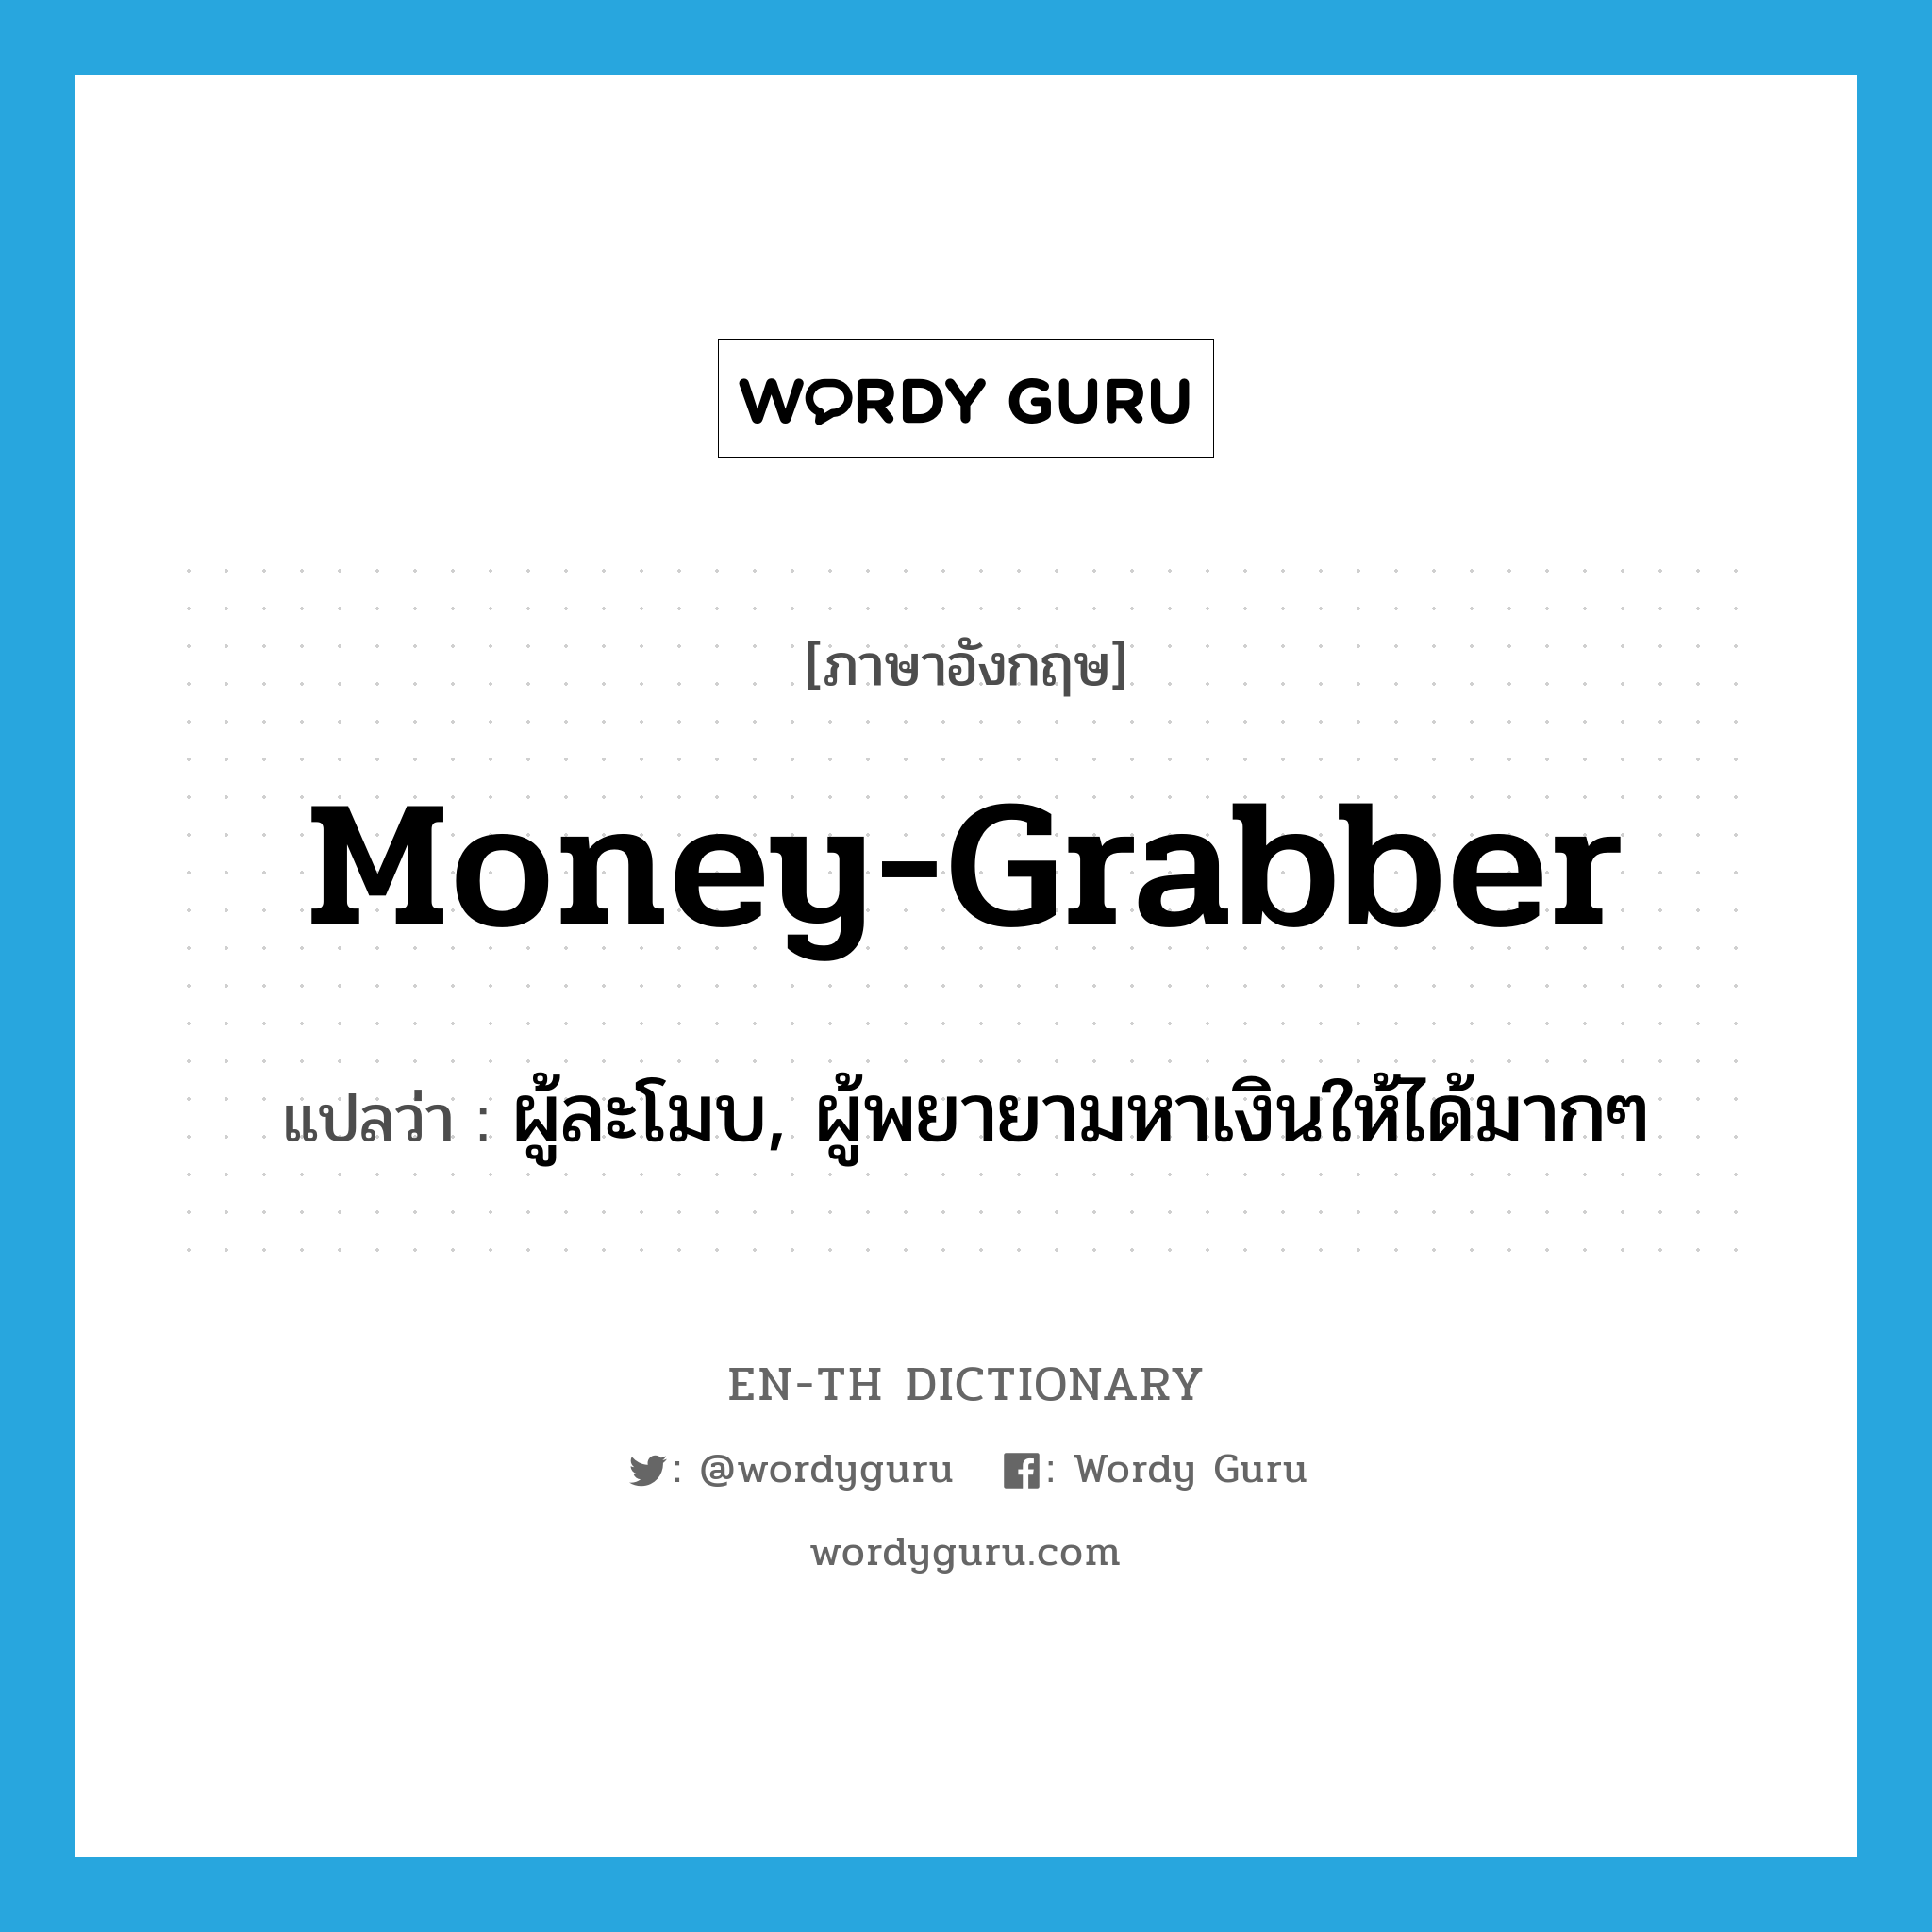 ผู้ละโมบ, ผู้พยายามหาเงินให้ได้มากๆ ภาษาอังกฤษ?, คำศัพท์ภาษาอังกฤษ ผู้ละโมบ, ผู้พยายามหาเงินให้ได้มากๆ แปลว่า money-grabber ประเภท N หมวด N